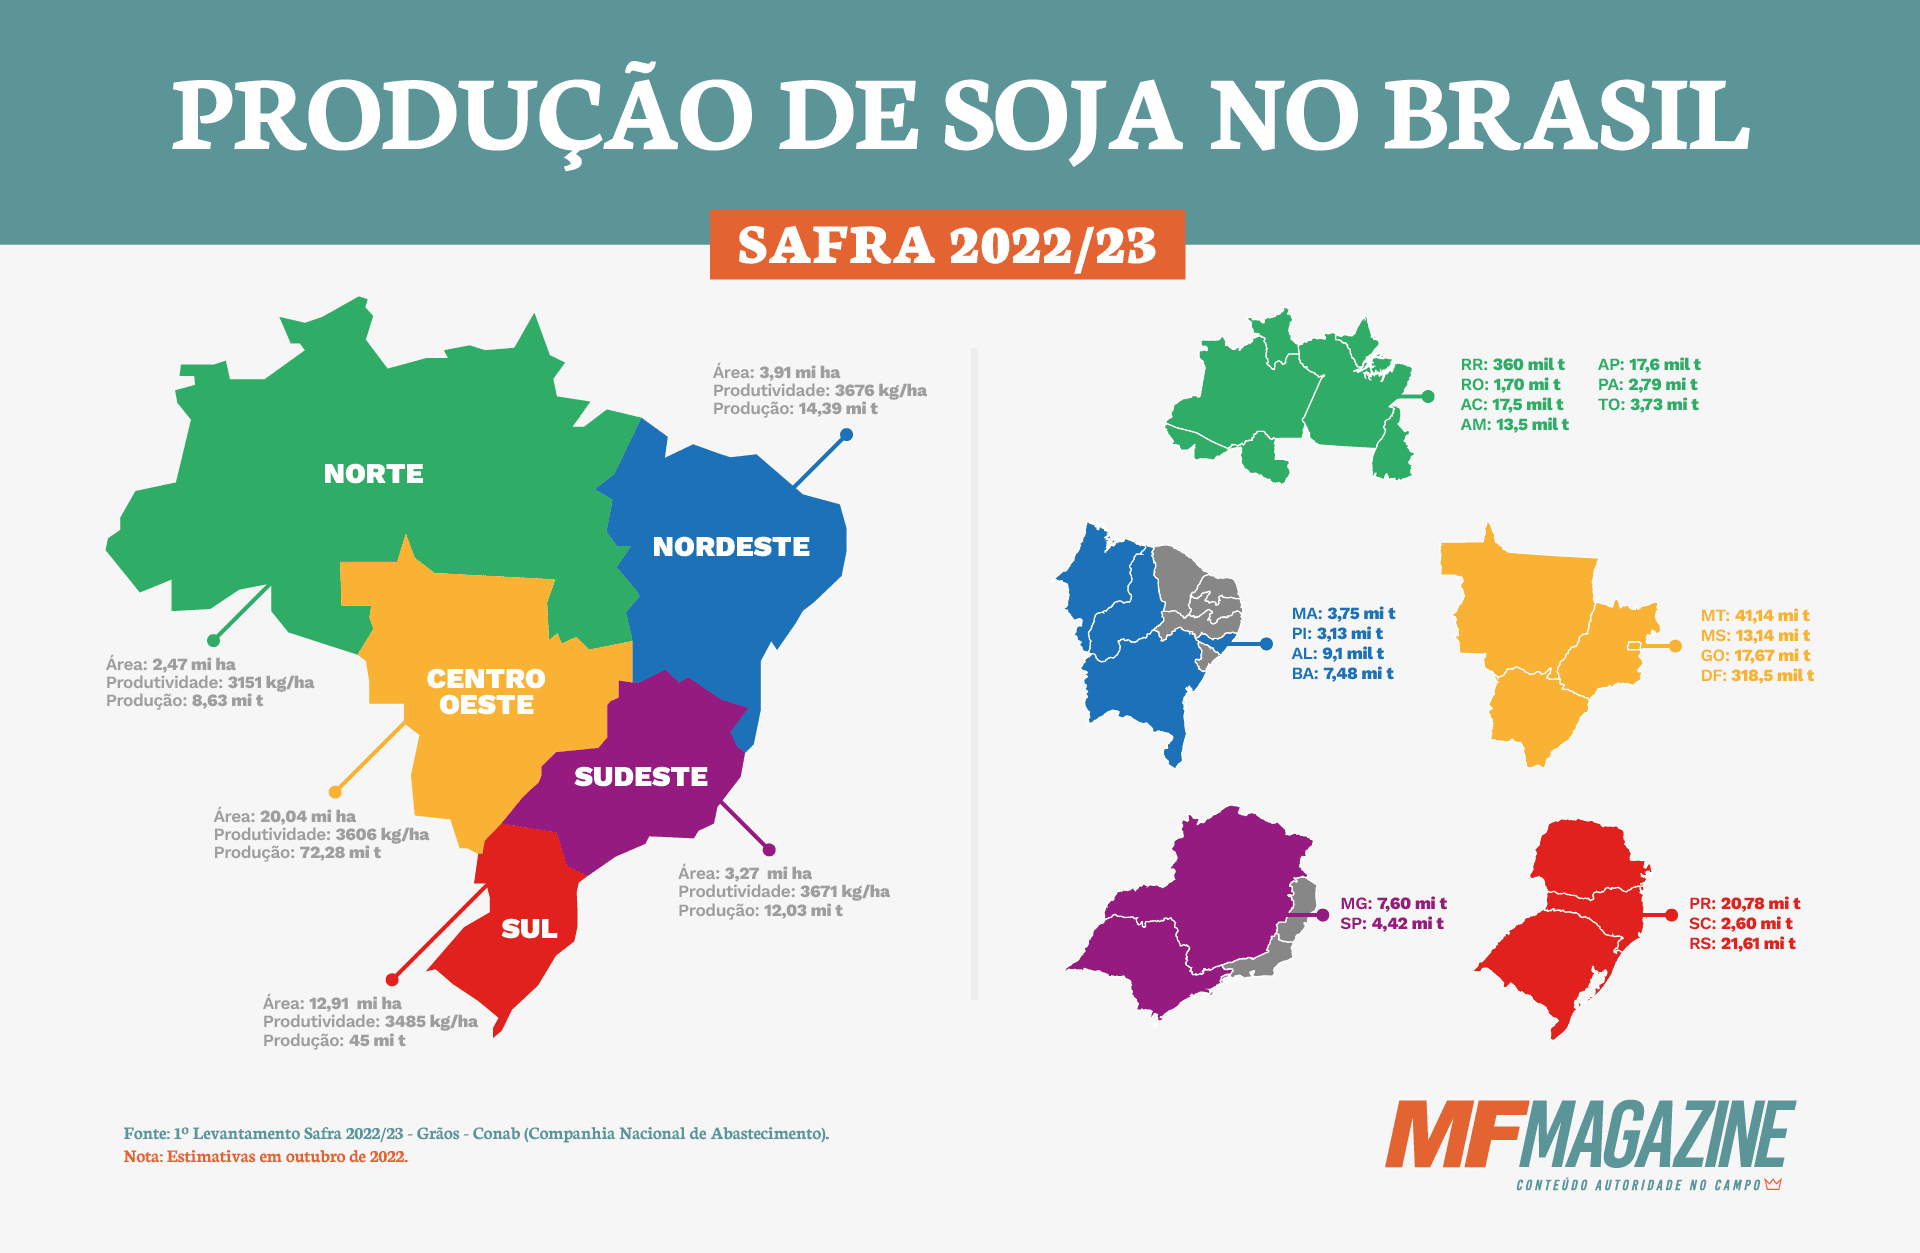 Infográfico do panorama da produção de soja no Brasil, mostrando a área cultivada, a produtividade e a produção de acordo com cada região brasileira.